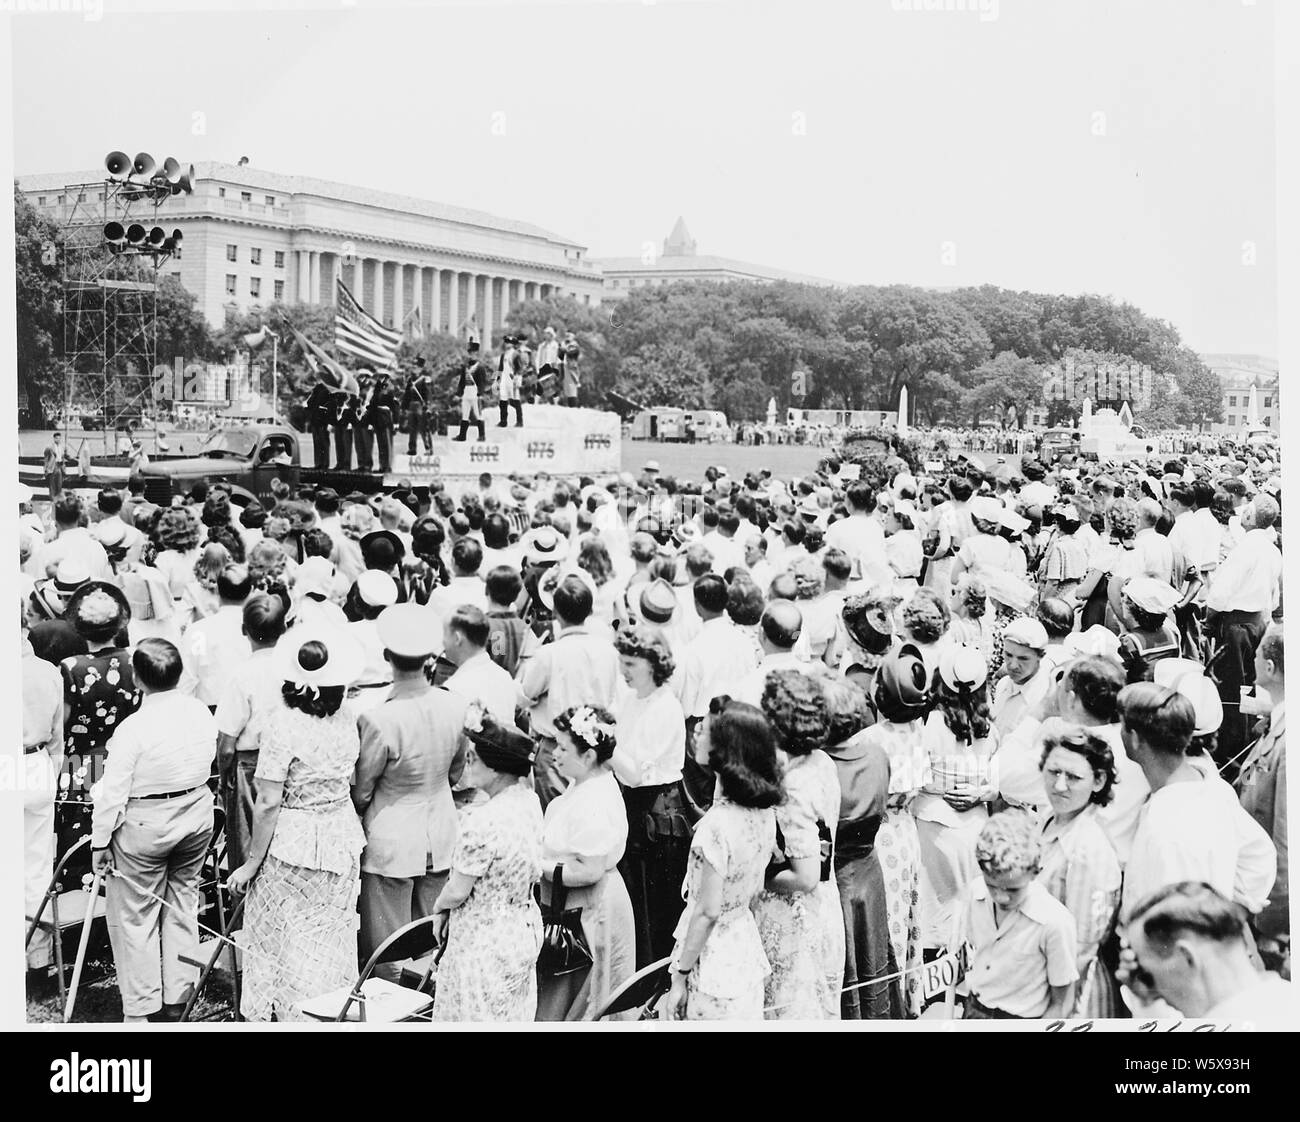 Präsident Truman besucht Zeremonien feiern das 100-jährige Jubiläum des Washington Monument. Diese Ansicht zeigt die Menge beobachten die Parade. Stockfoto